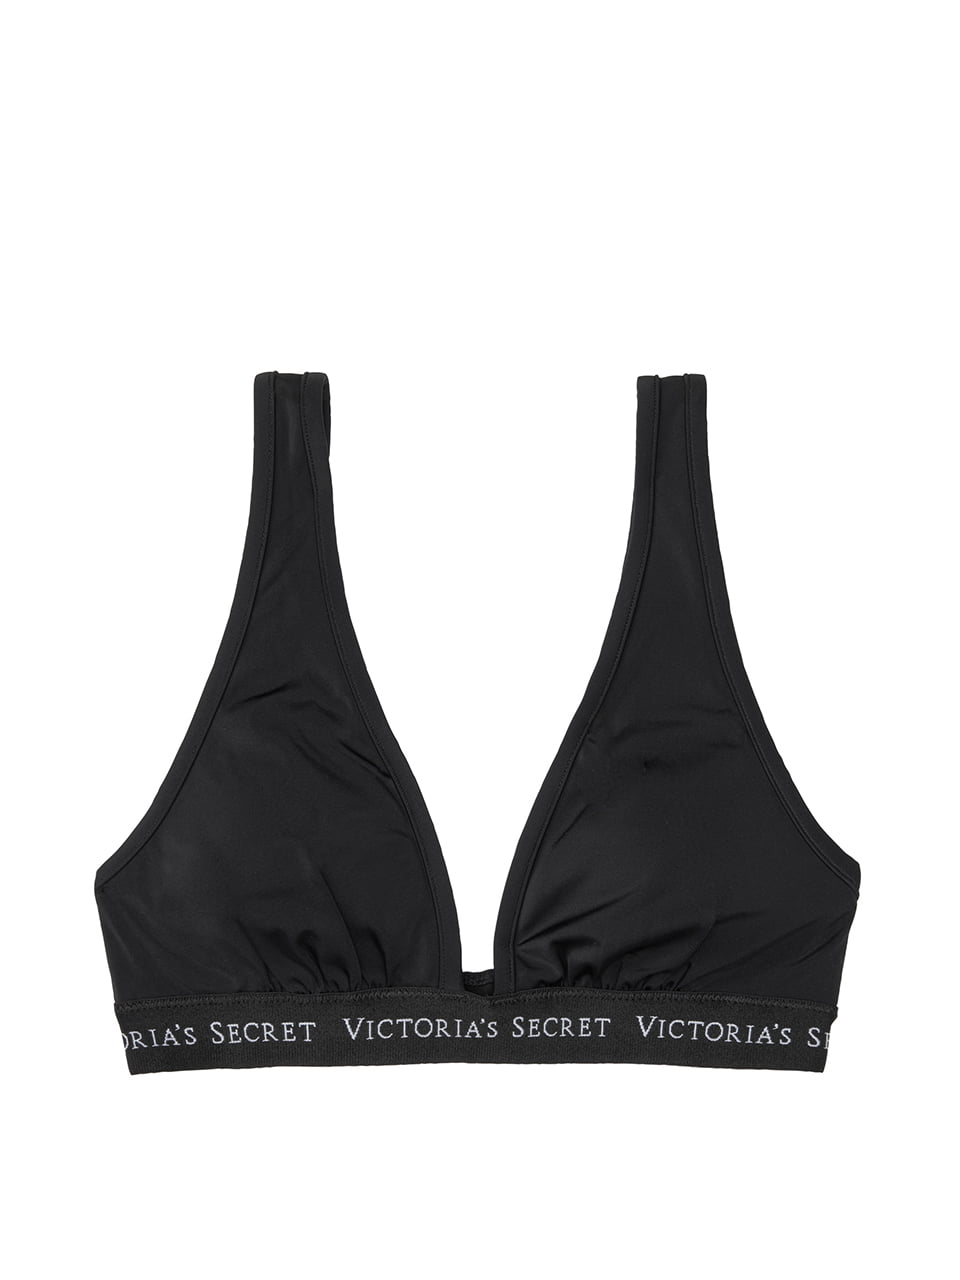 Victoria's Secret Swim 2021 Summer Sydney logo plunge top